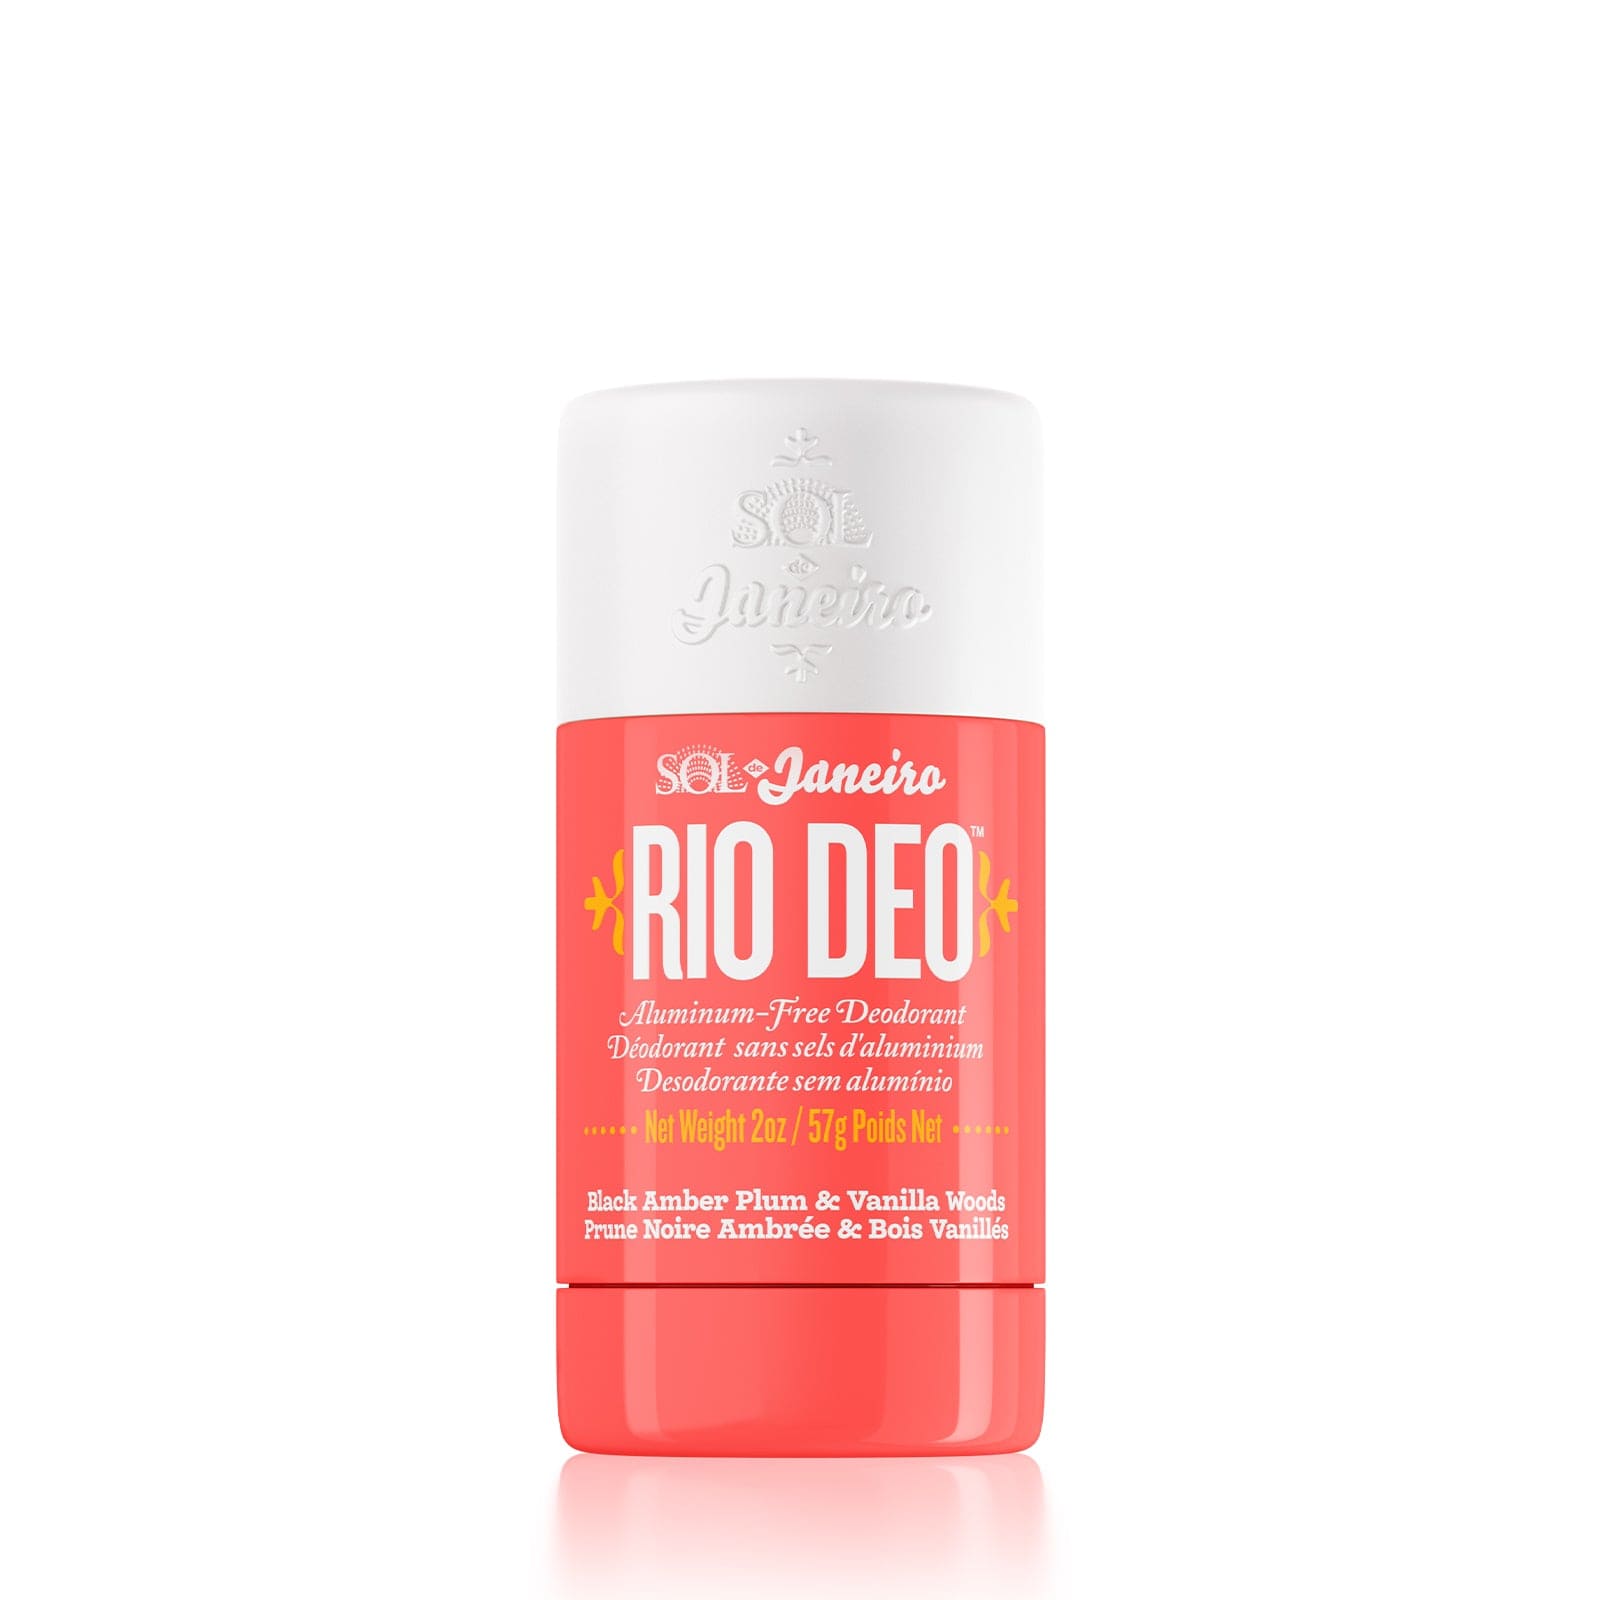 Rio Deo Aluminum-Free Deodorant Cheirosa 40 | Sol de Janeiro